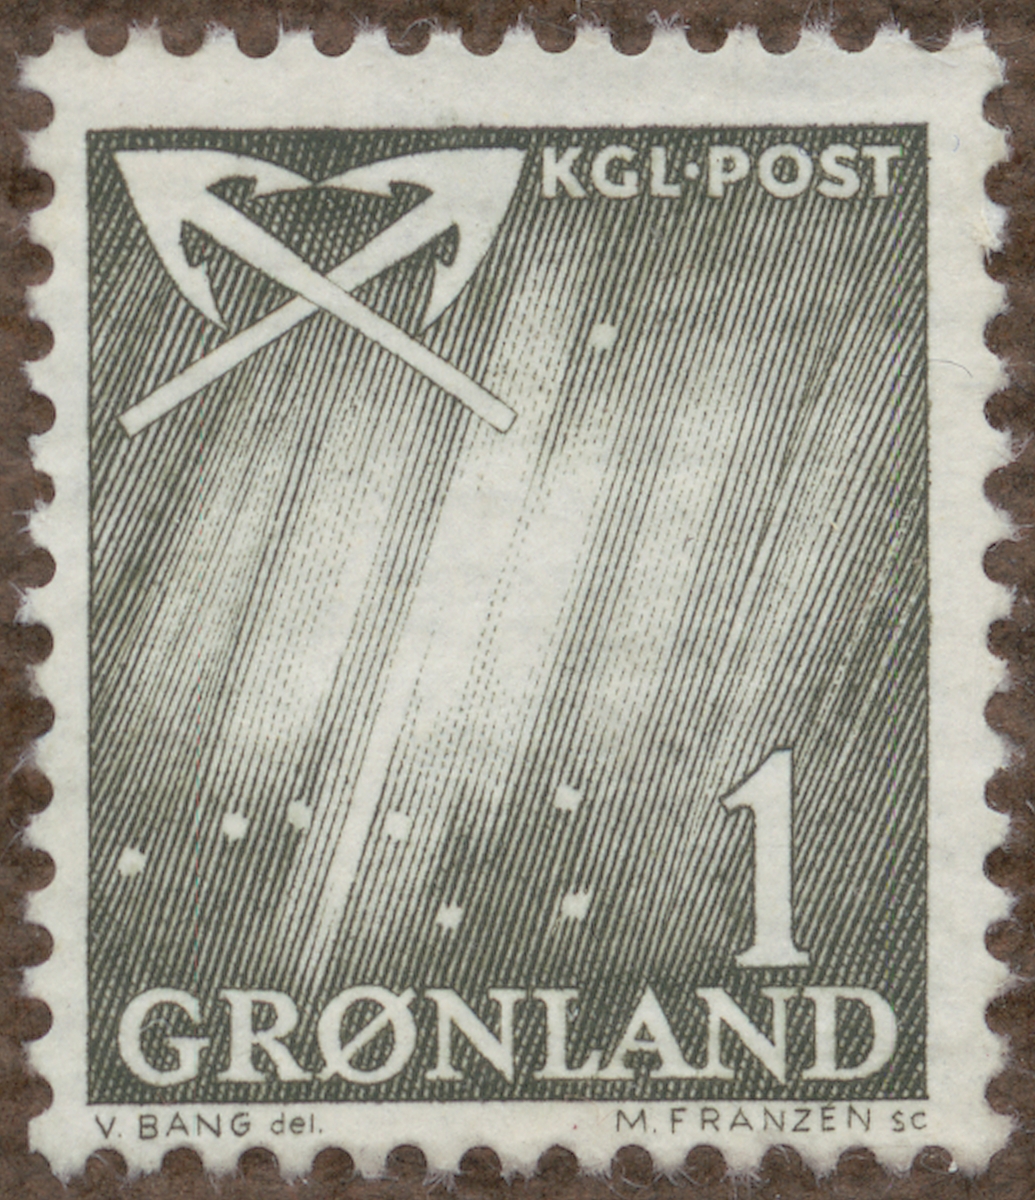 Frimärke ur Gösta Bodmans filatelistiska motivsamling, påbörjad 1950.
Frimärke från Grönland, 1963. Motiv av Valfångst-harpuner -norrsken, karlavagnen-